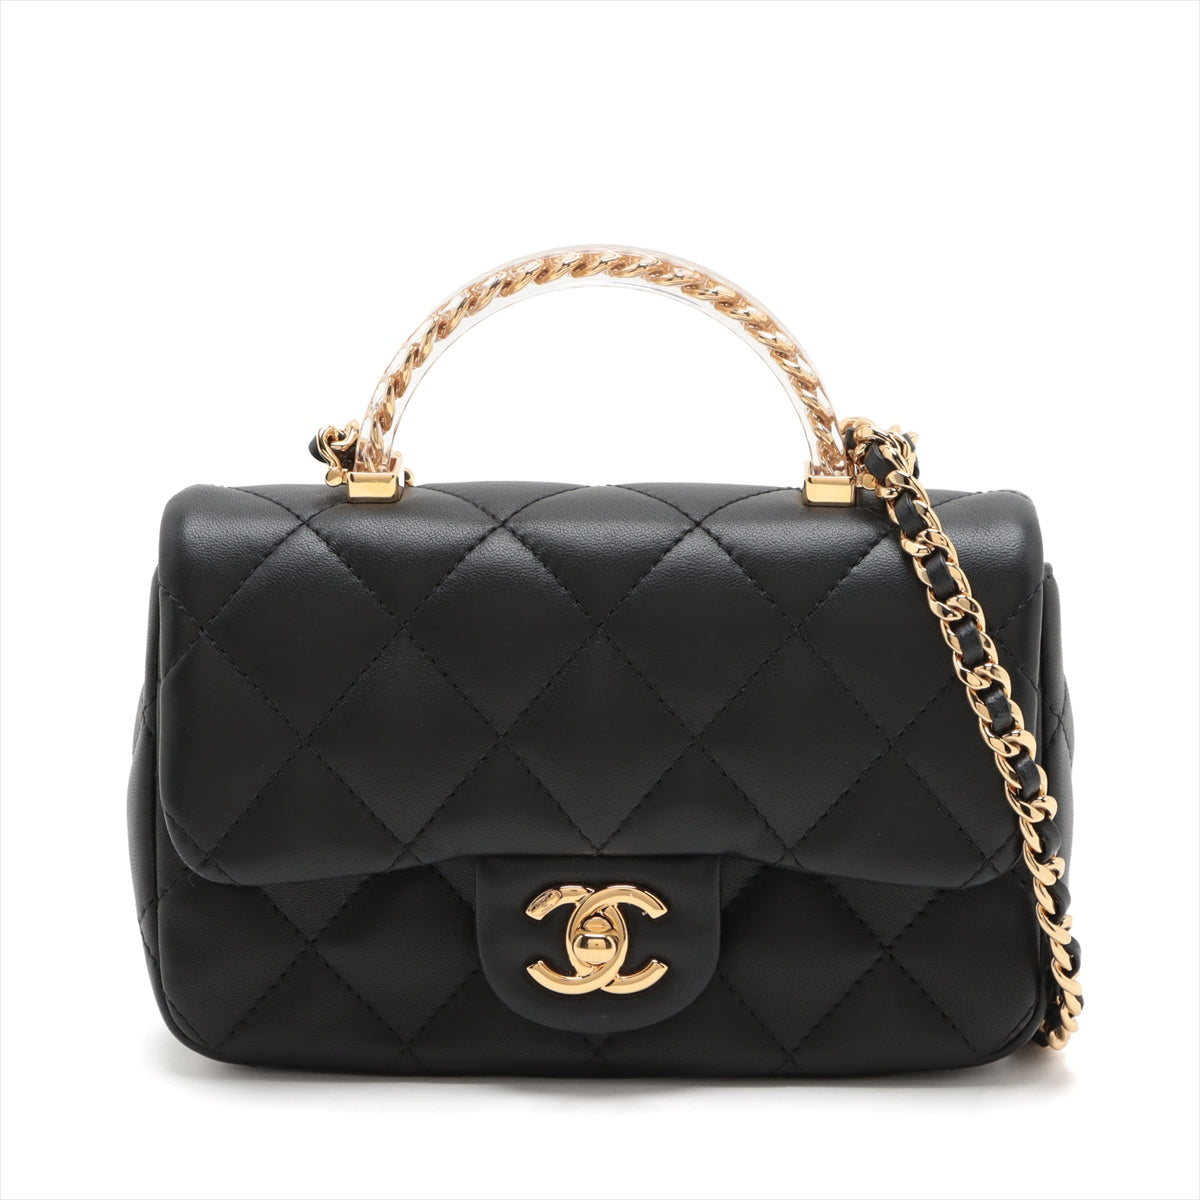 Chanel Mini Matelasse Lambskin 2way shoulder bag Top handle Black Gold Metal fittings